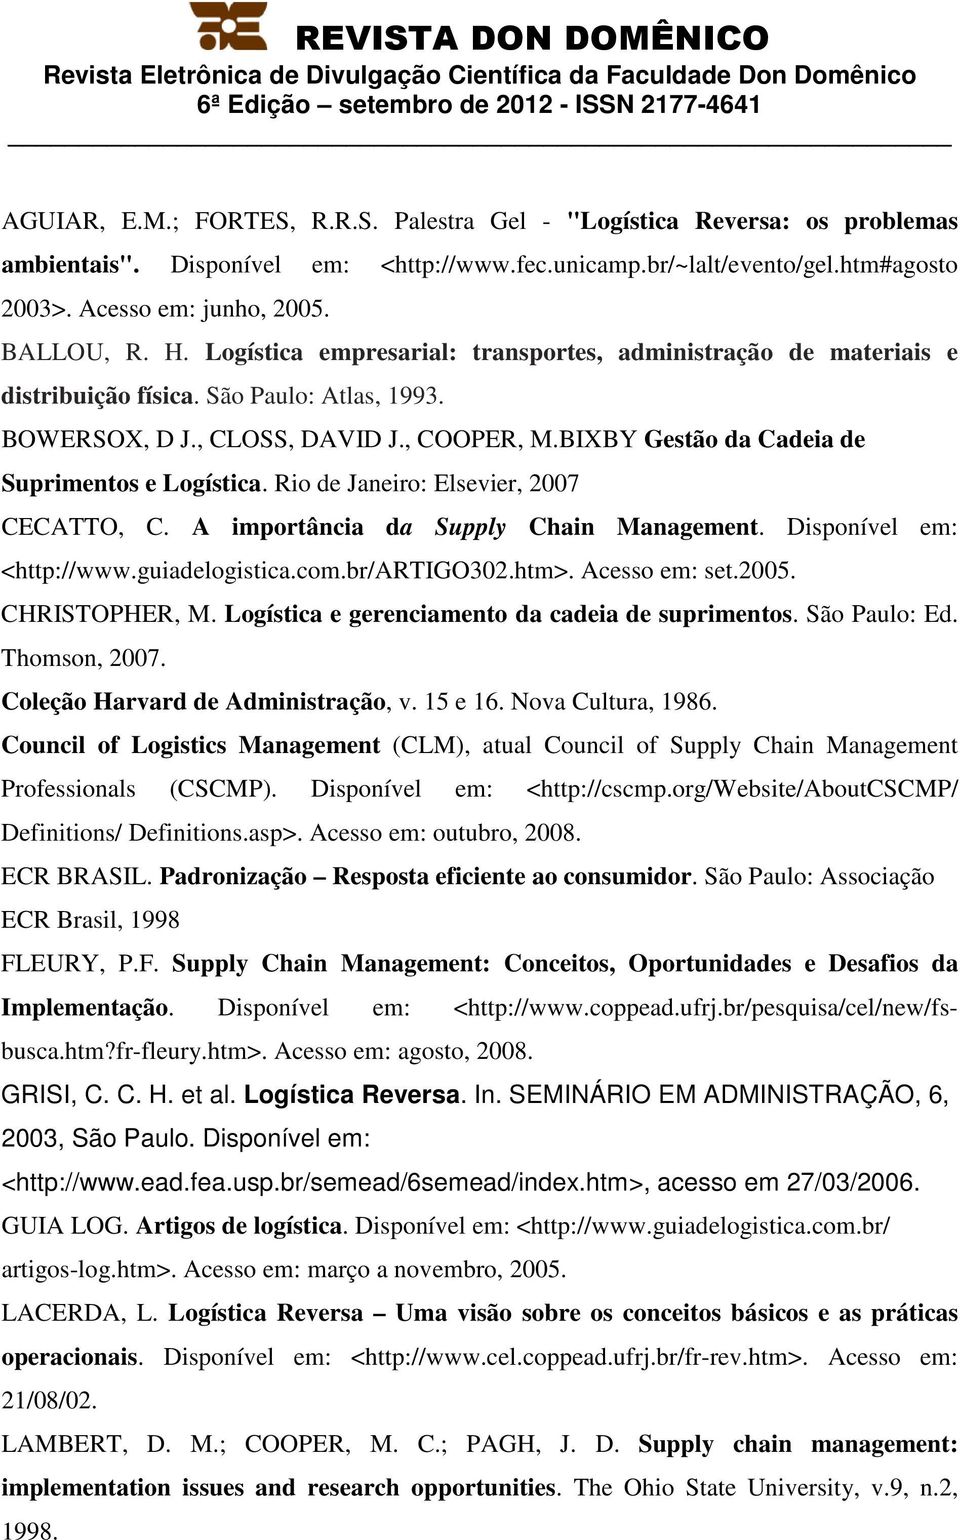 BIXBY Gestão da Cadeia de Suprimentos e Logística. Rio de Janeiro: Elsevier, 2007 CECATTO, C. A importância da Supply Chain Management. Disponível em: <http://www.guiadelogistica.com.br/artigo302.